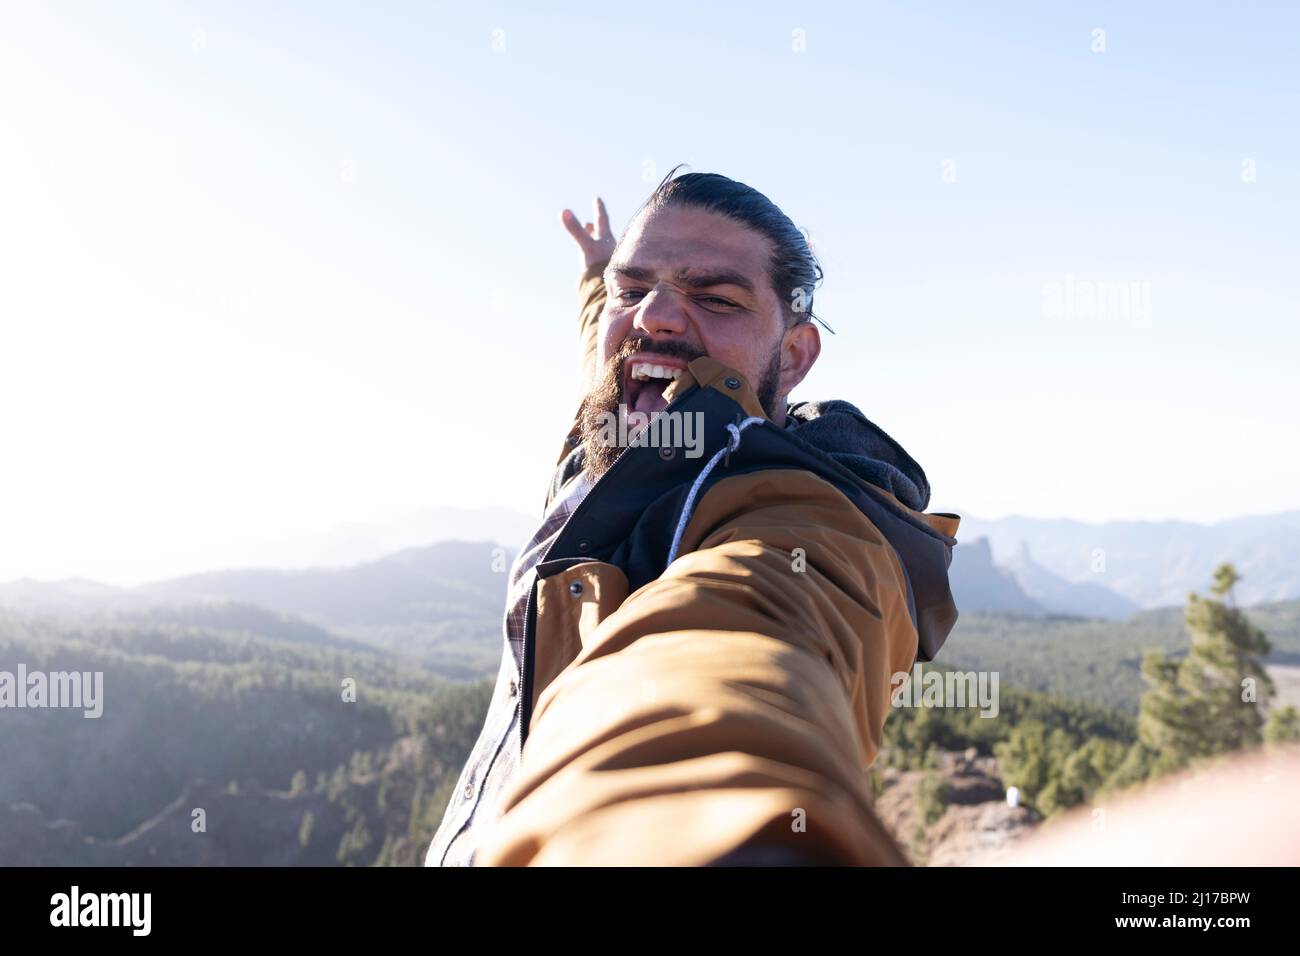 Homme avec la bouche ouverte prenant le selfie le jour ensoleillé Banque D'Images